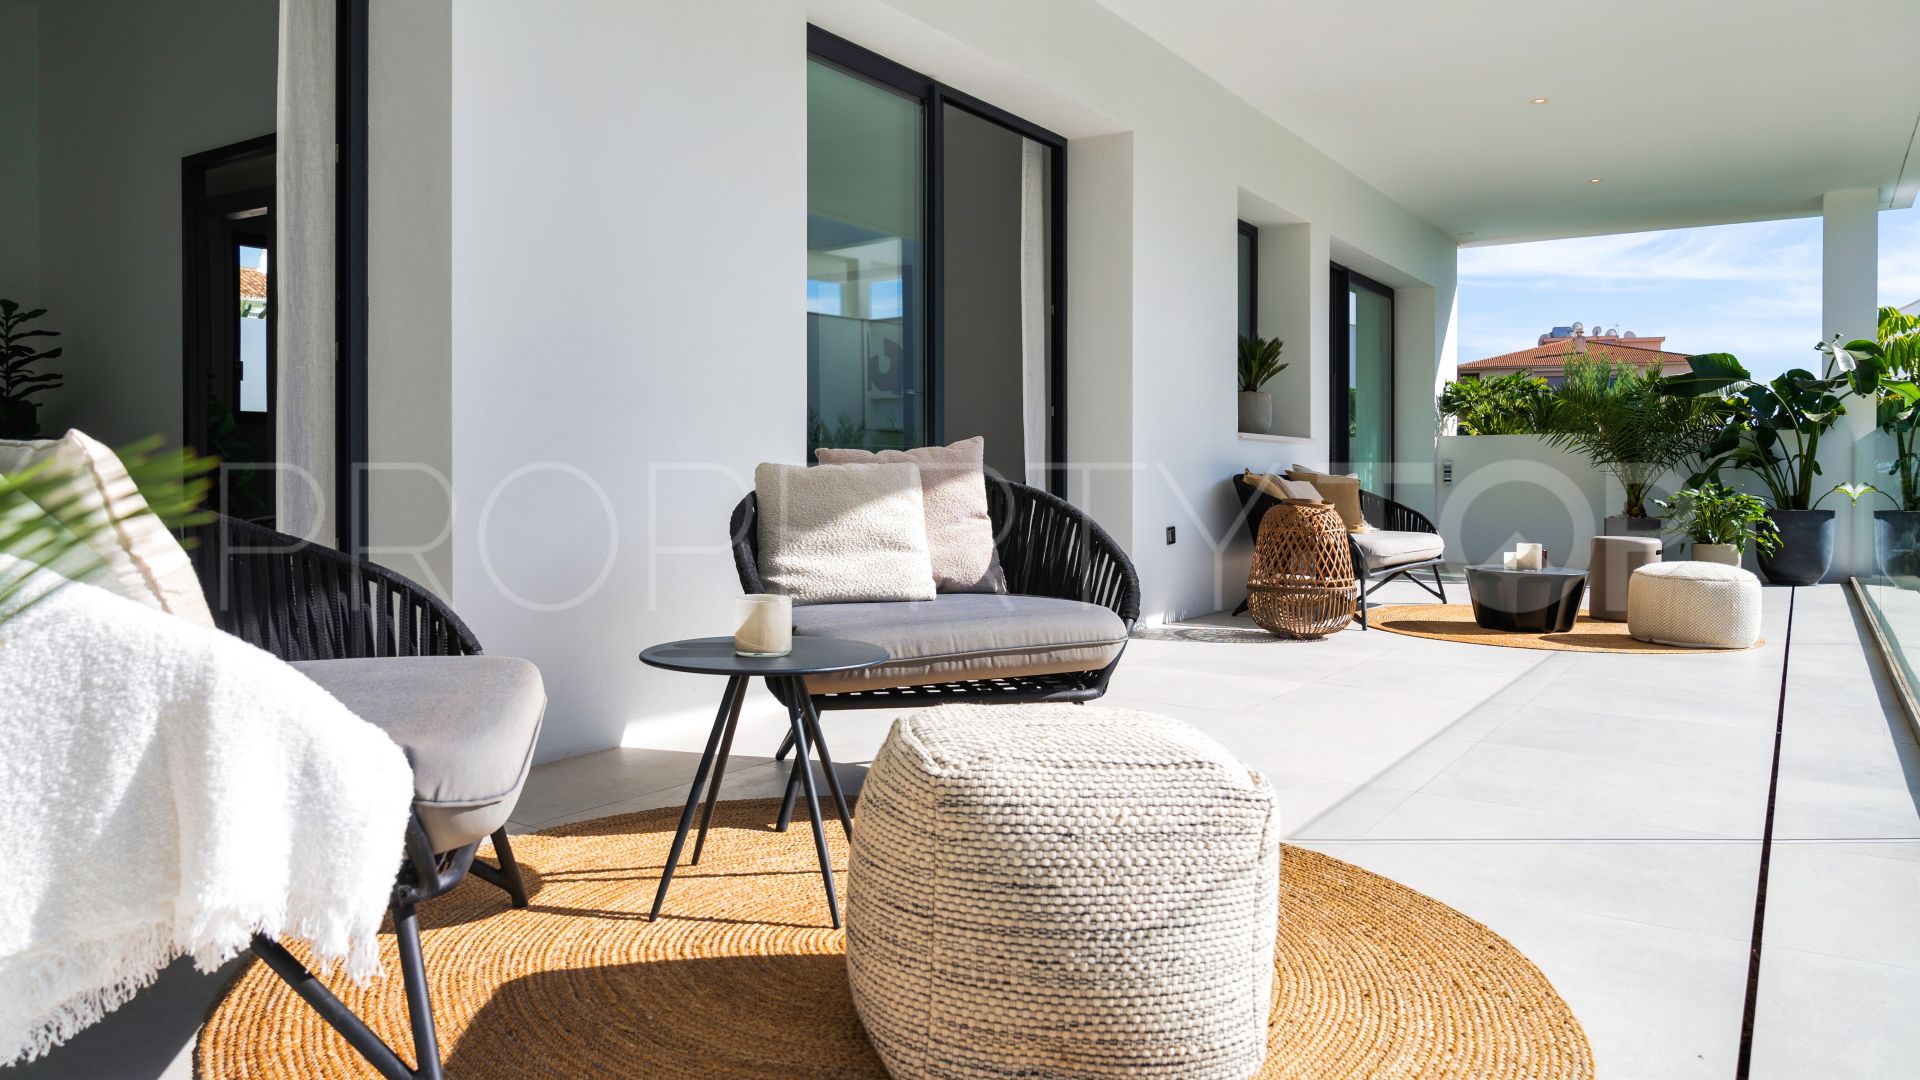 Buy villa in Marbella - Puerto Banus with 5 bedrooms